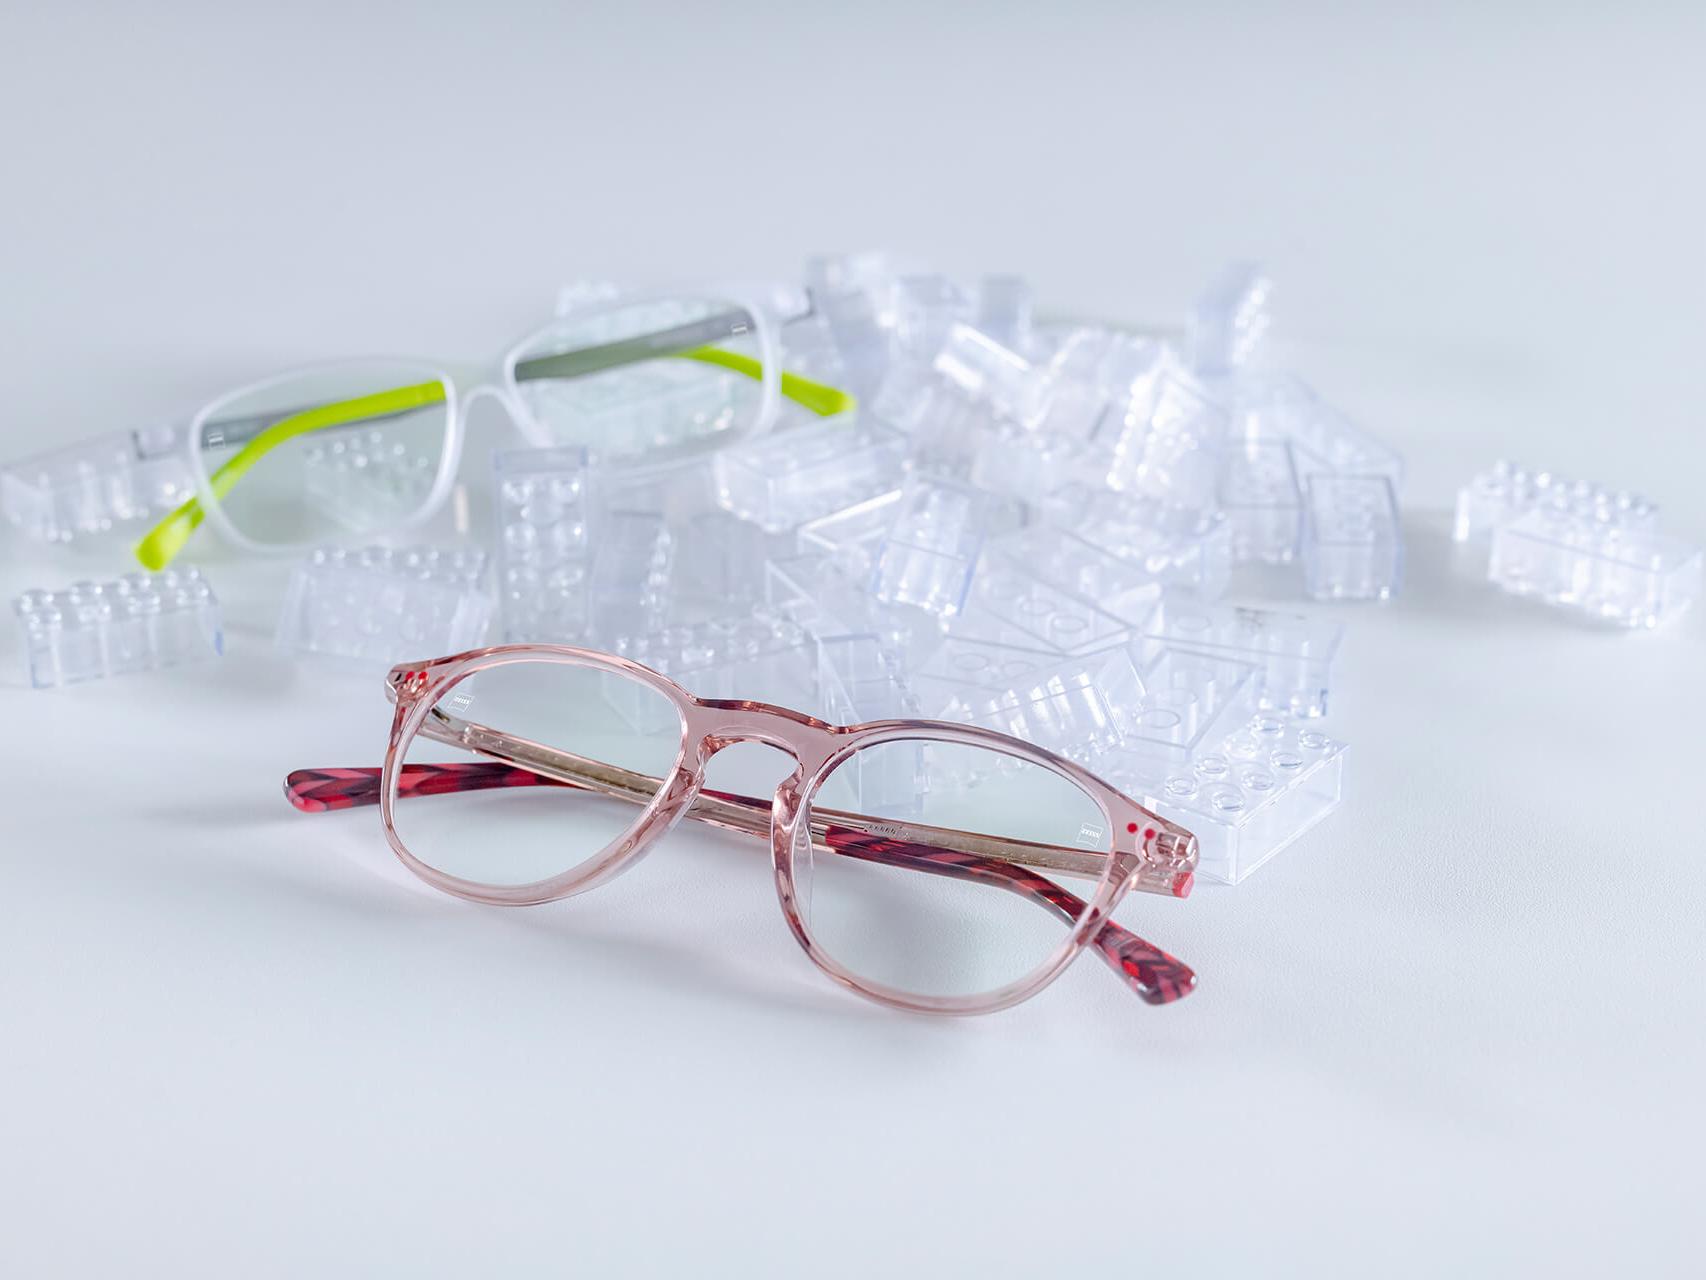 兩副配備蔡司鏡片和 DuraVision® Kids 鍍膜的兒童眼鏡。眼鏡放在透明的兒童積木之間。